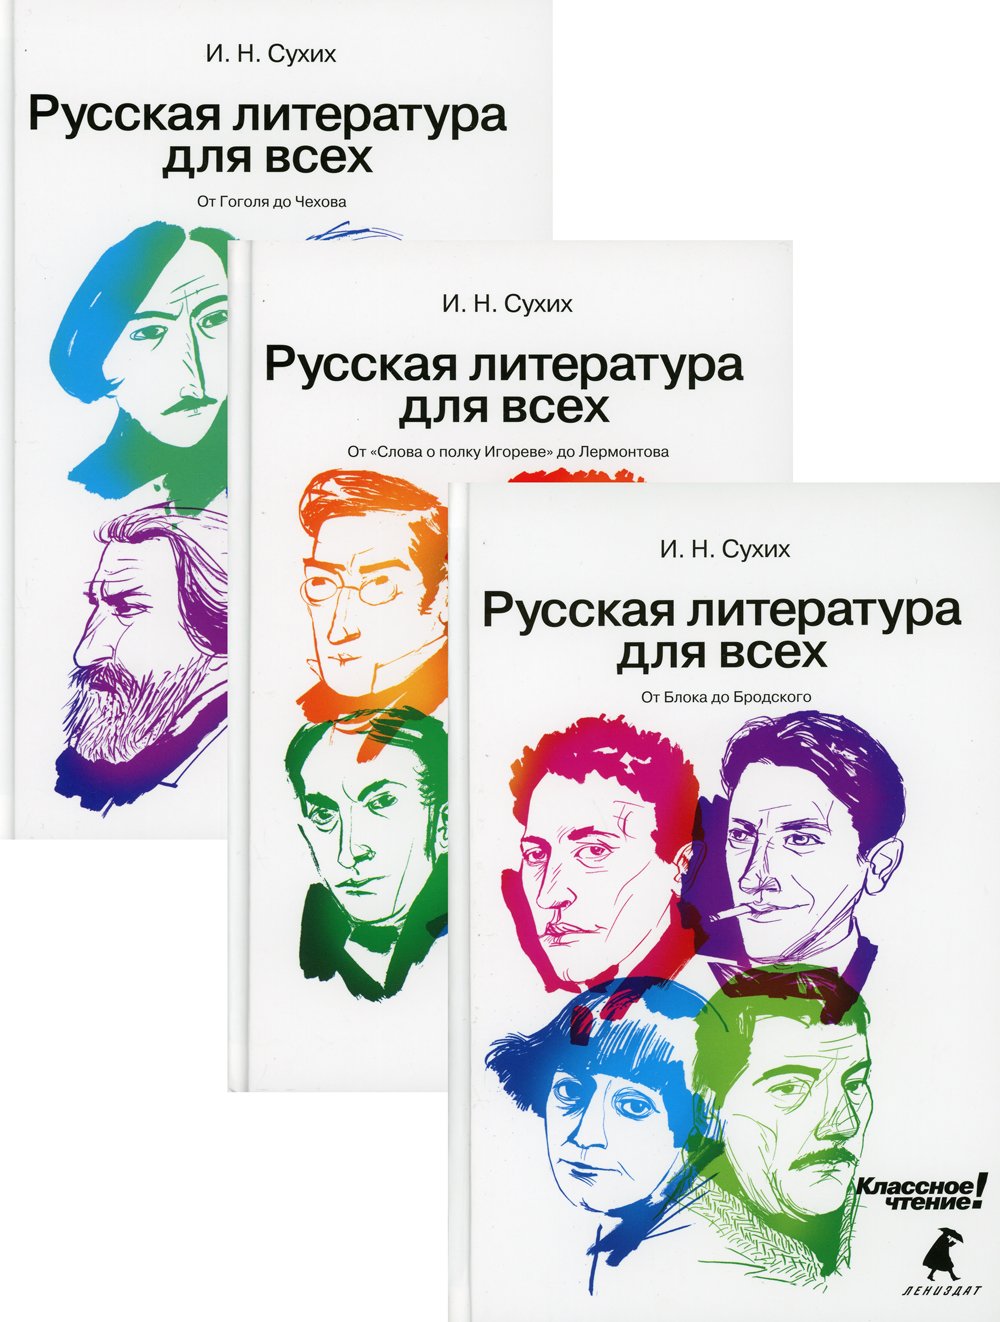 Русская литература для всех. Классное чтение!